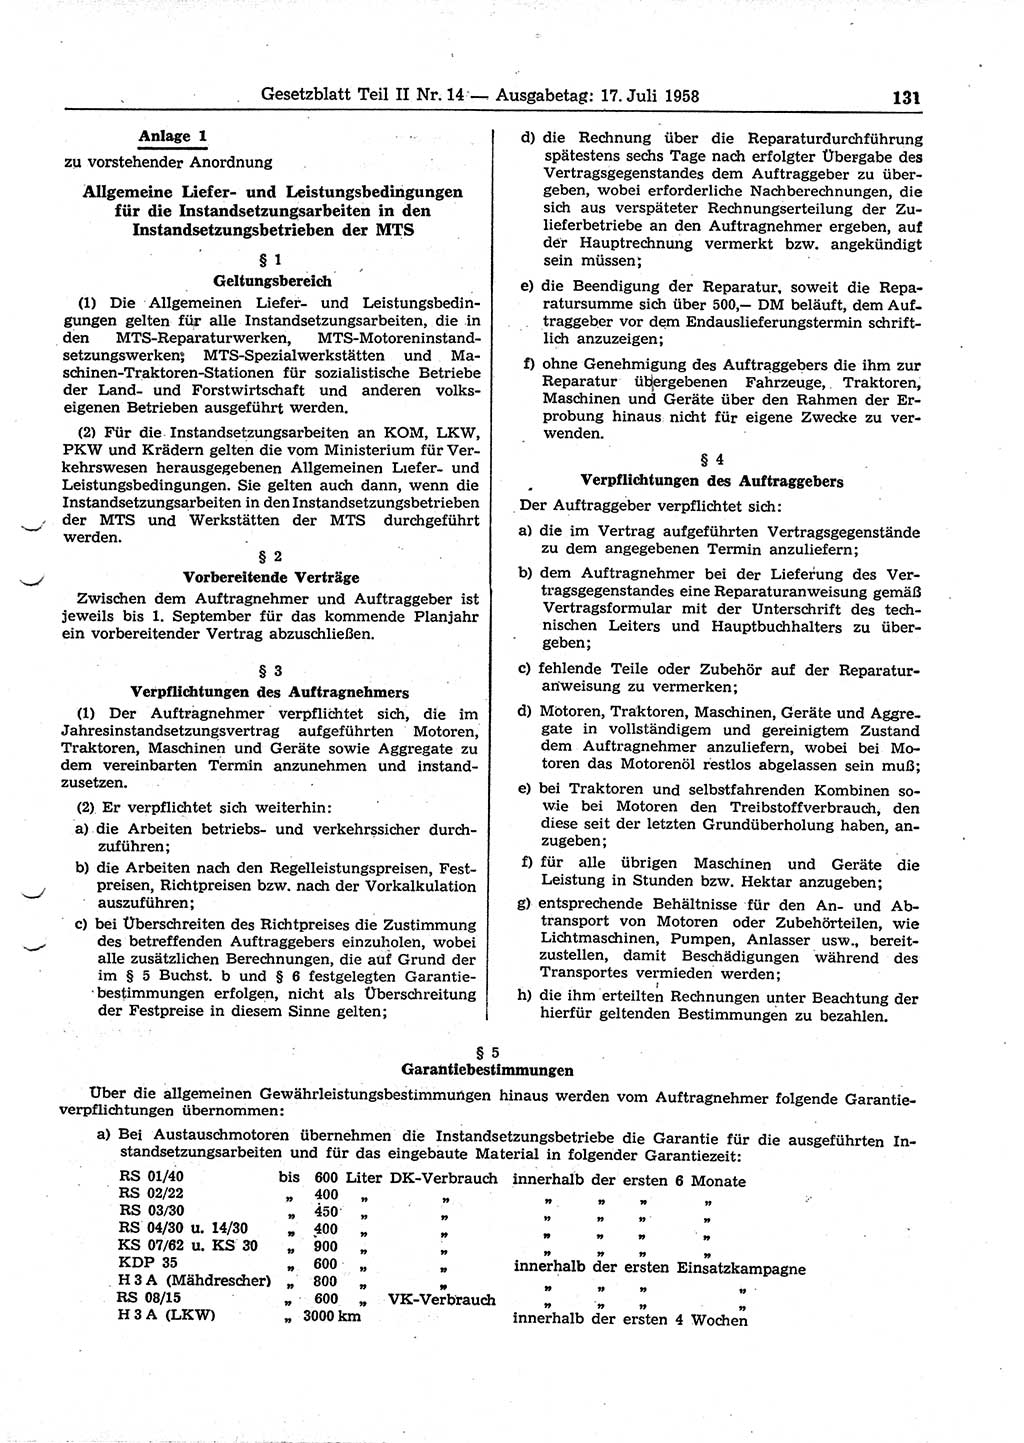 Gesetzblatt (GBl.) der Deutschen Demokratischen Republik (DDR) Teil ⅠⅠ 1958, Seite 131 (GBl. DDR ⅠⅠ 1958, S. 131)